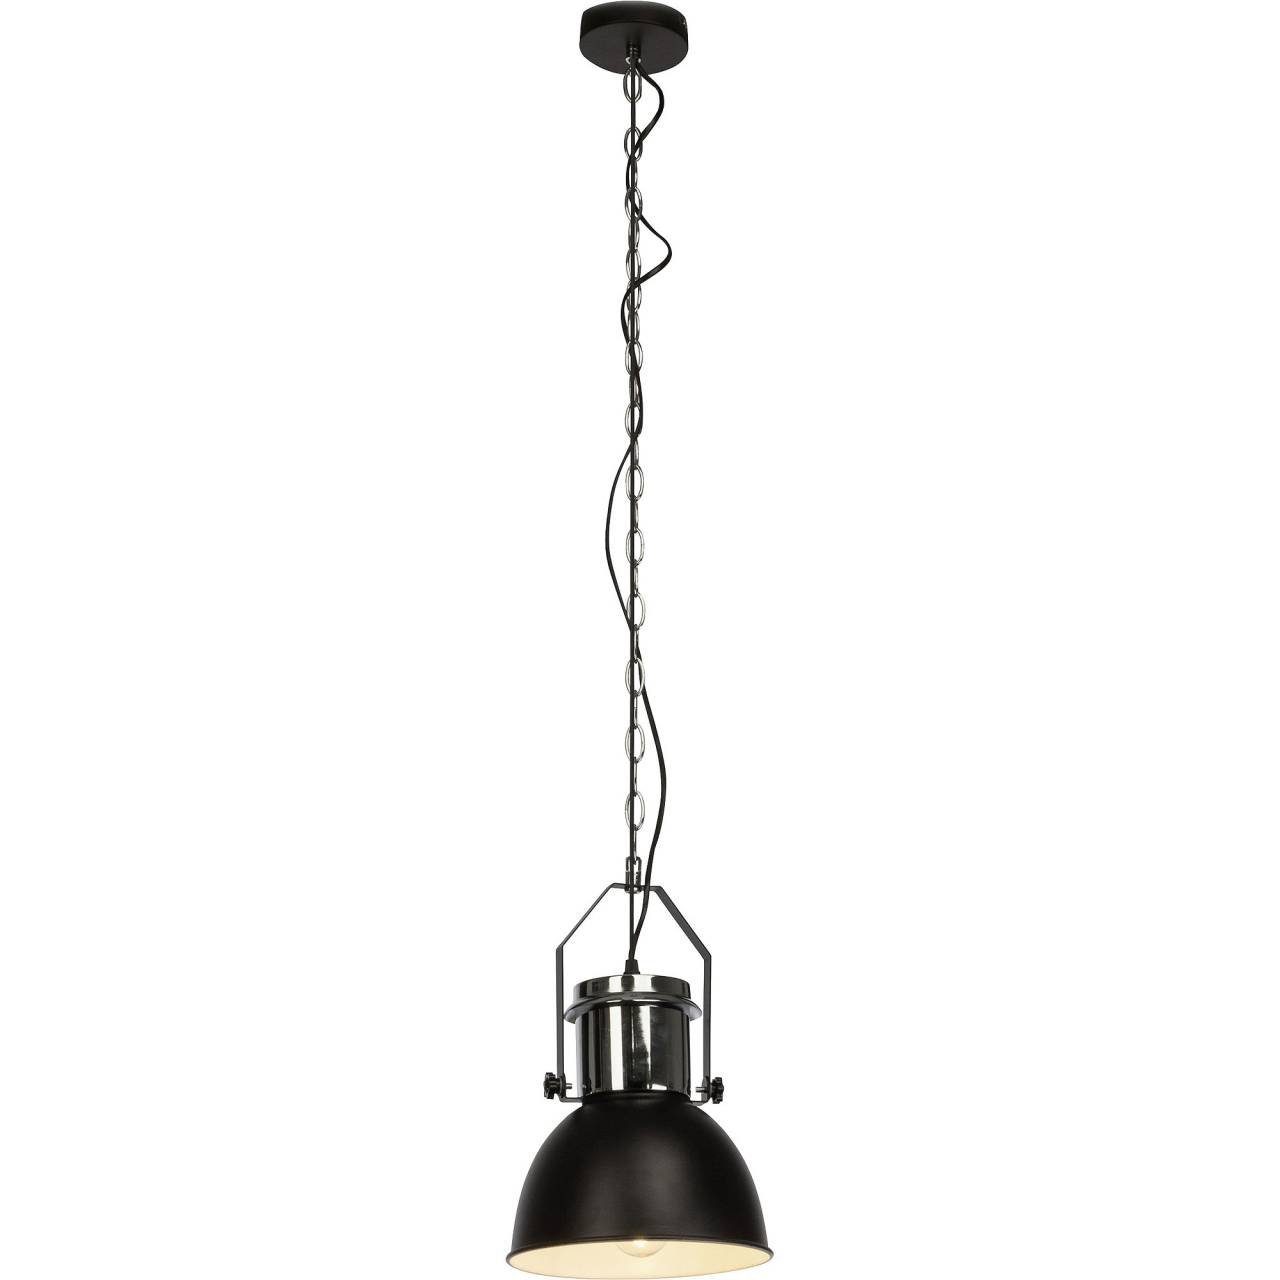 Brilliant Pendelleuchte Salford, Lampe Salford Pendelleuchte 23cm schwarz/chrom 1x A60, E27, 60W, gee | Pendelleuchten